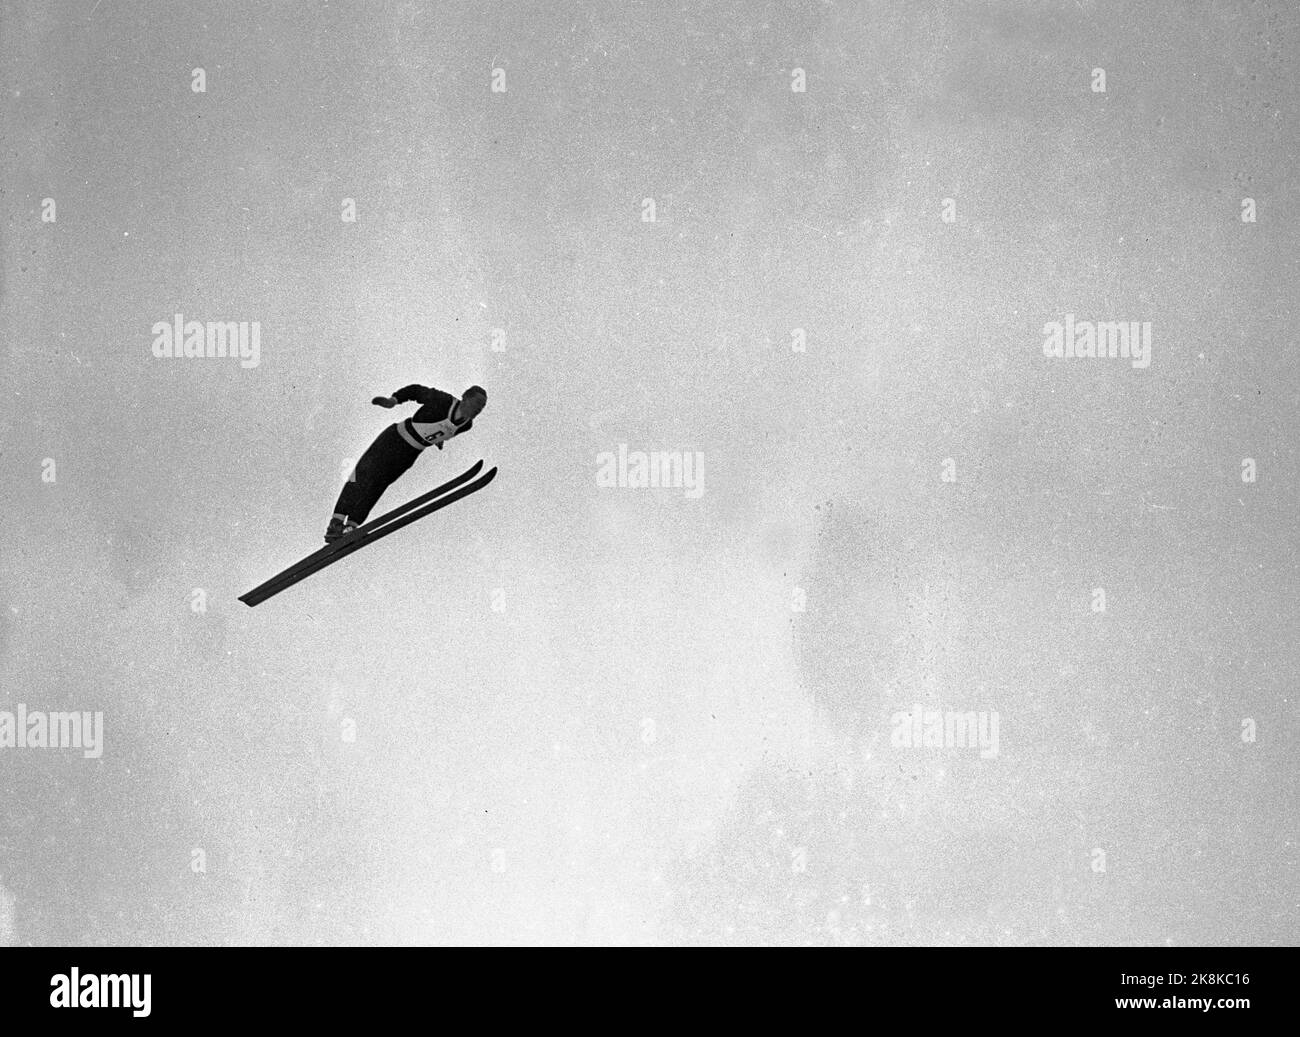 Oslo 19520224 Olympische Spiele in Oslo 1952, insbesondere Springen in Holmenkollbakken, mit mehr als 100.000 Zuschauern anwesend. Hier der Sieger Arnfinn Bergmann im Schwebeflug in seinem zweiten Sprung. Foto: NTB, Stockfoto